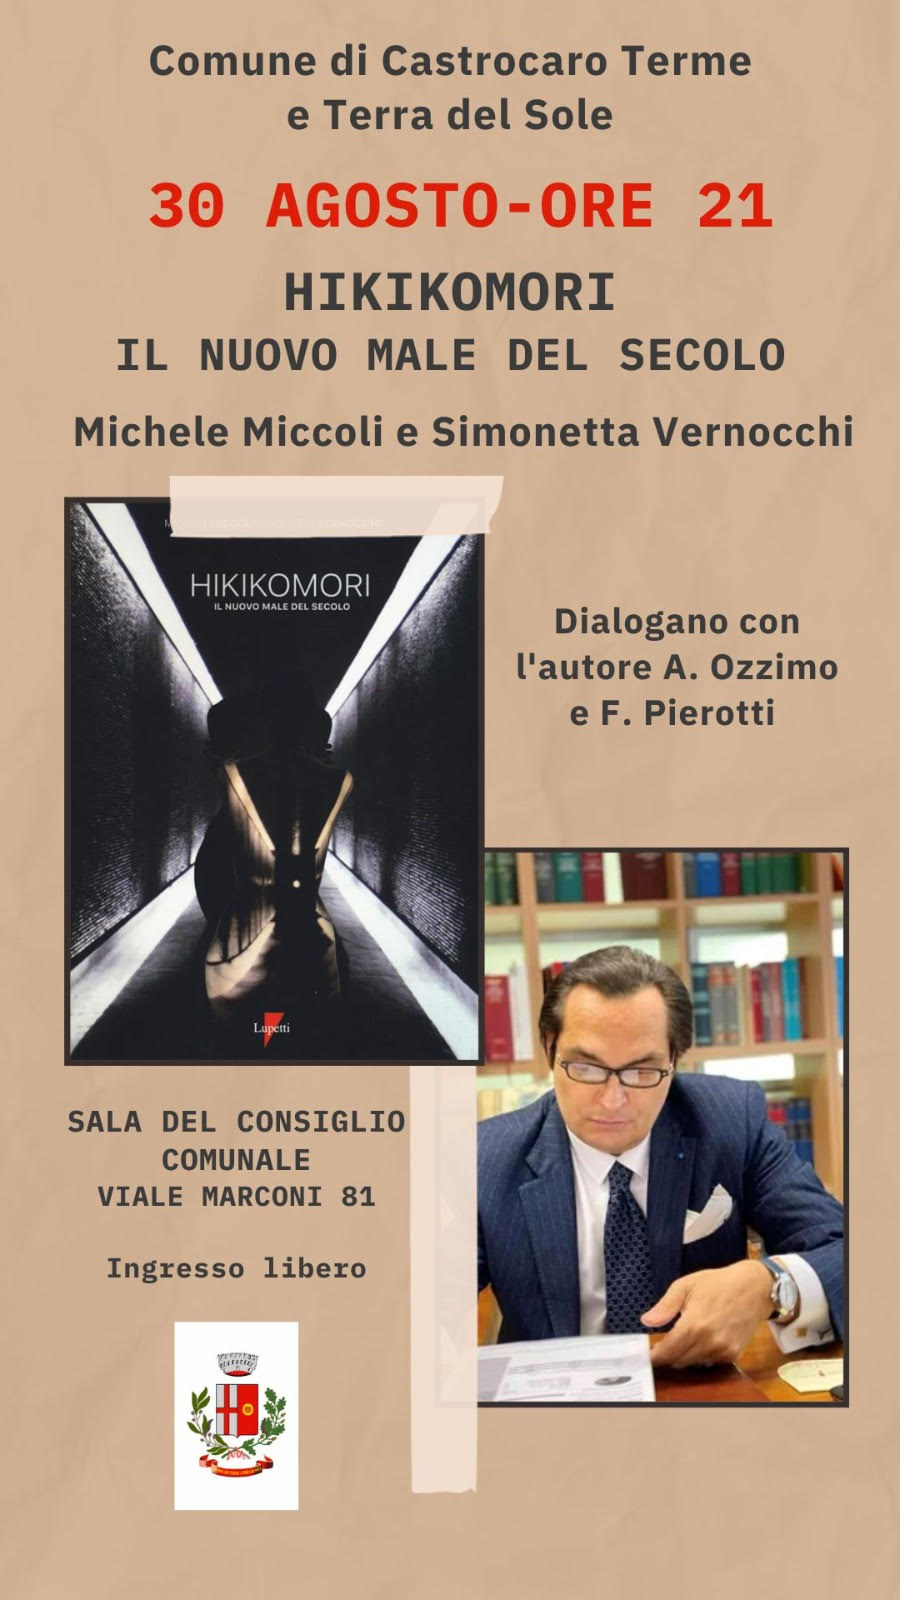 Castrocaro Terme - 30 agosto ore 21 - Hikikomori: il nuovo male del secolo - M. Miccoli e S. Vernocci